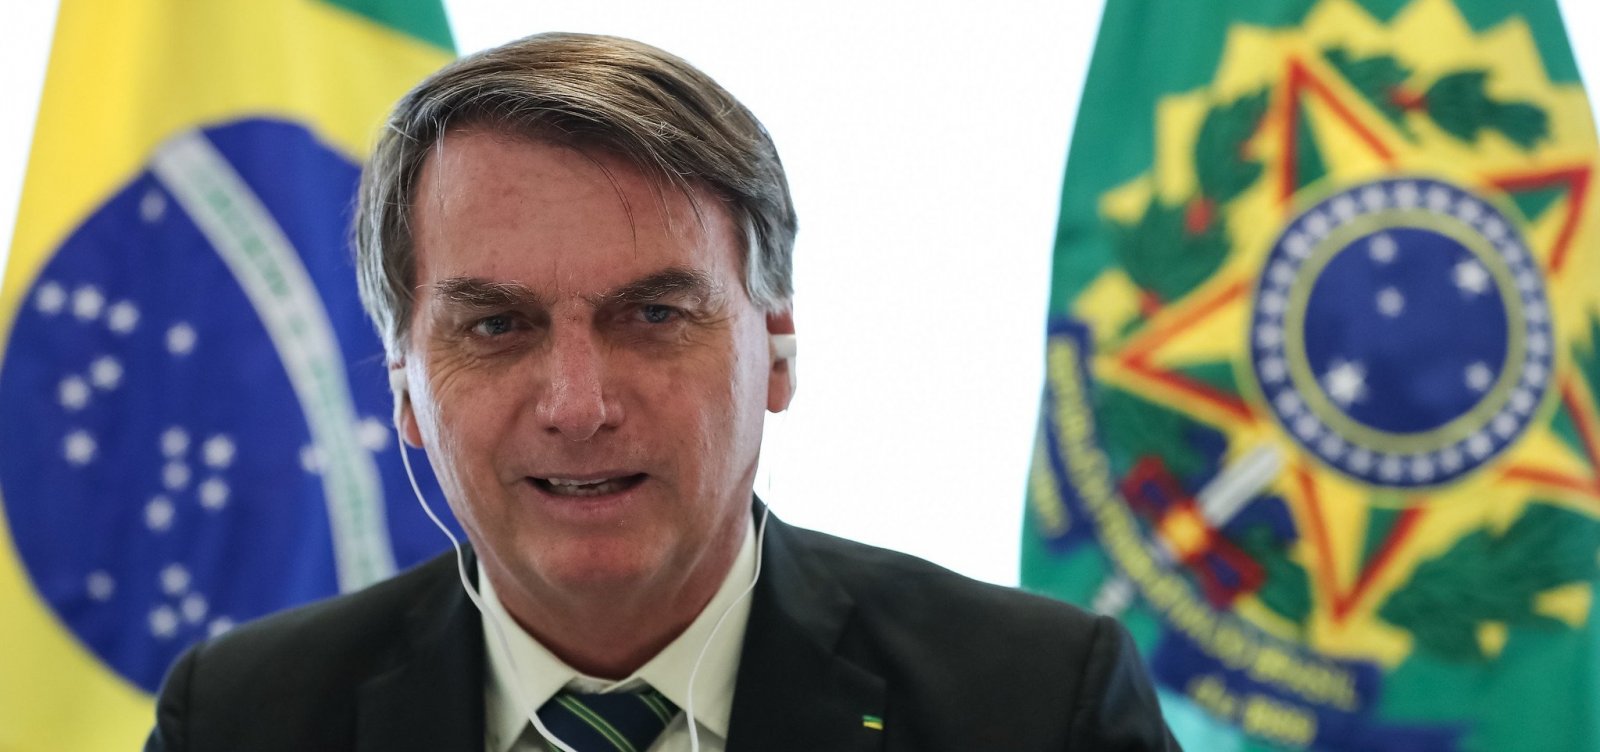 Frase de Bolsonaro sobre dar armas à população é rejeitada por 72%